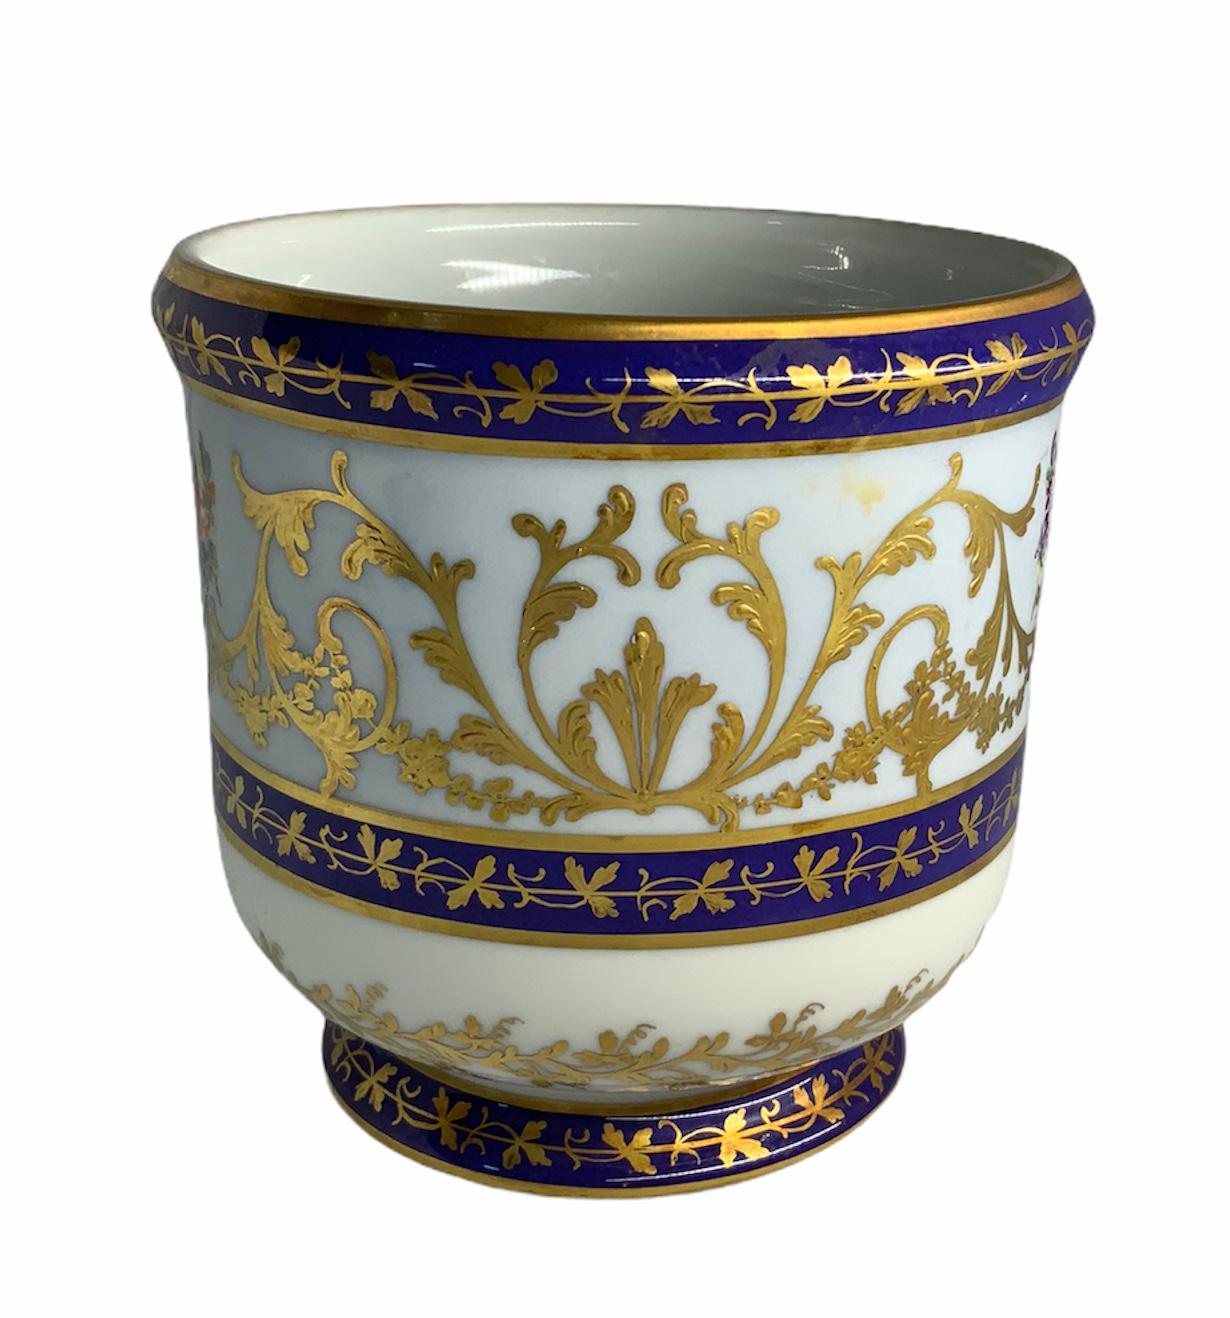 Il s'agit d'une porcelaine peinte à la main, ornée d'un vase central doré avec un arrangement de fleurs au centre et des feuilles d'acanthe dorées poussant sur les côtés. Le cache-pot est entouré de trois anneaux bleu cobalt décorés d'une rangée de